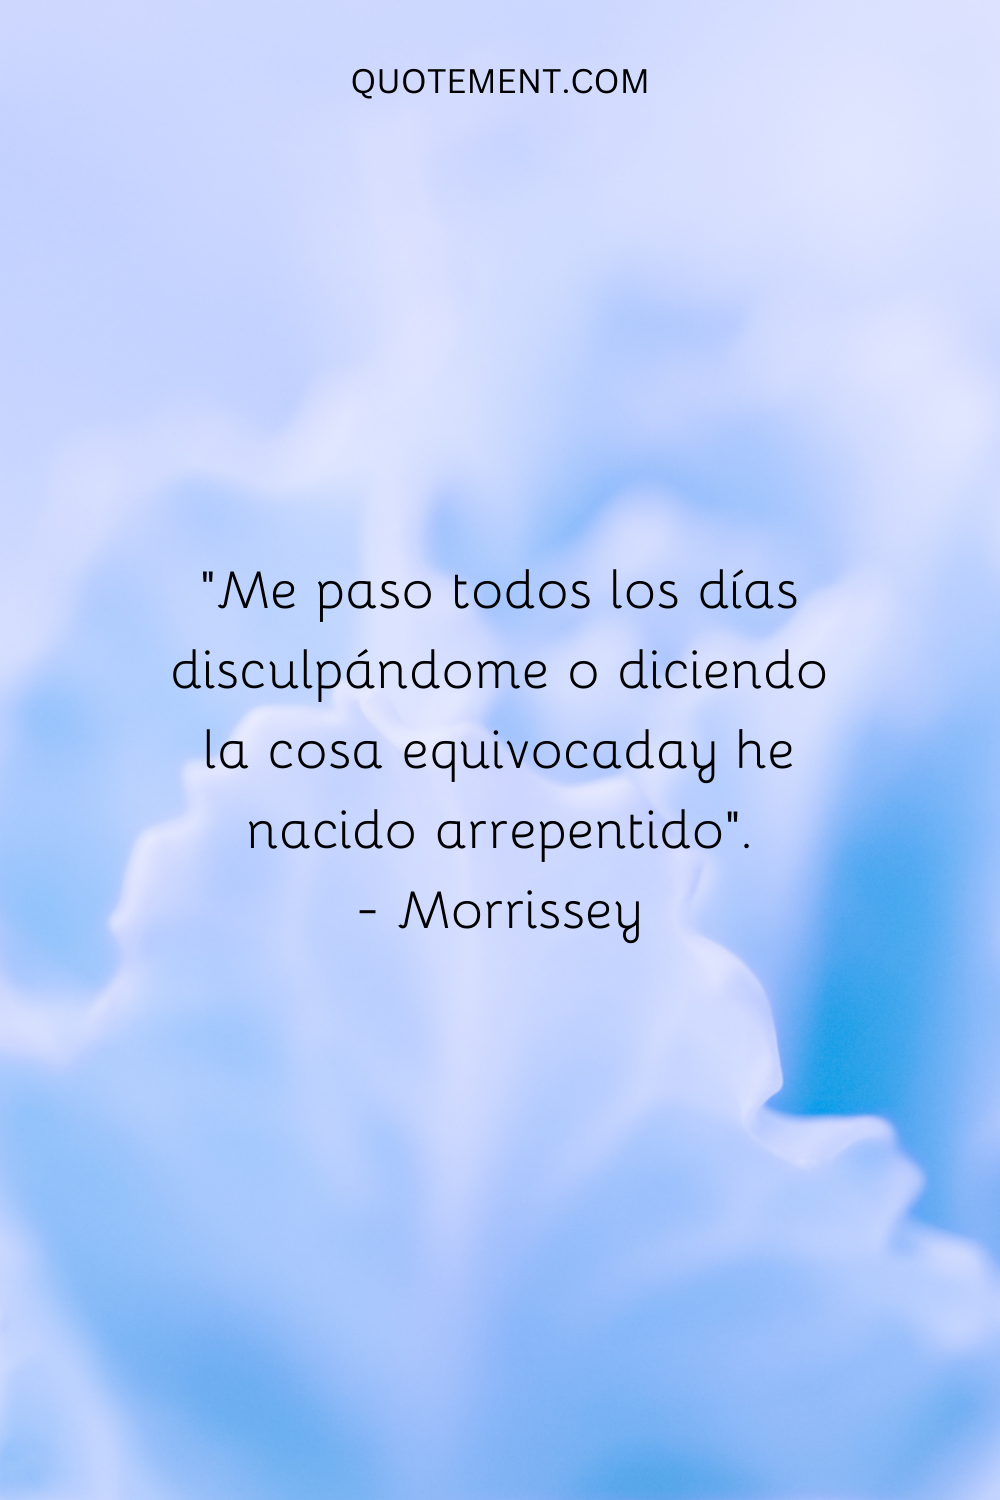 "Me paso el día disculpándome o diciendo cosas equivocadas, y nazco arrepentido". - Morrissey